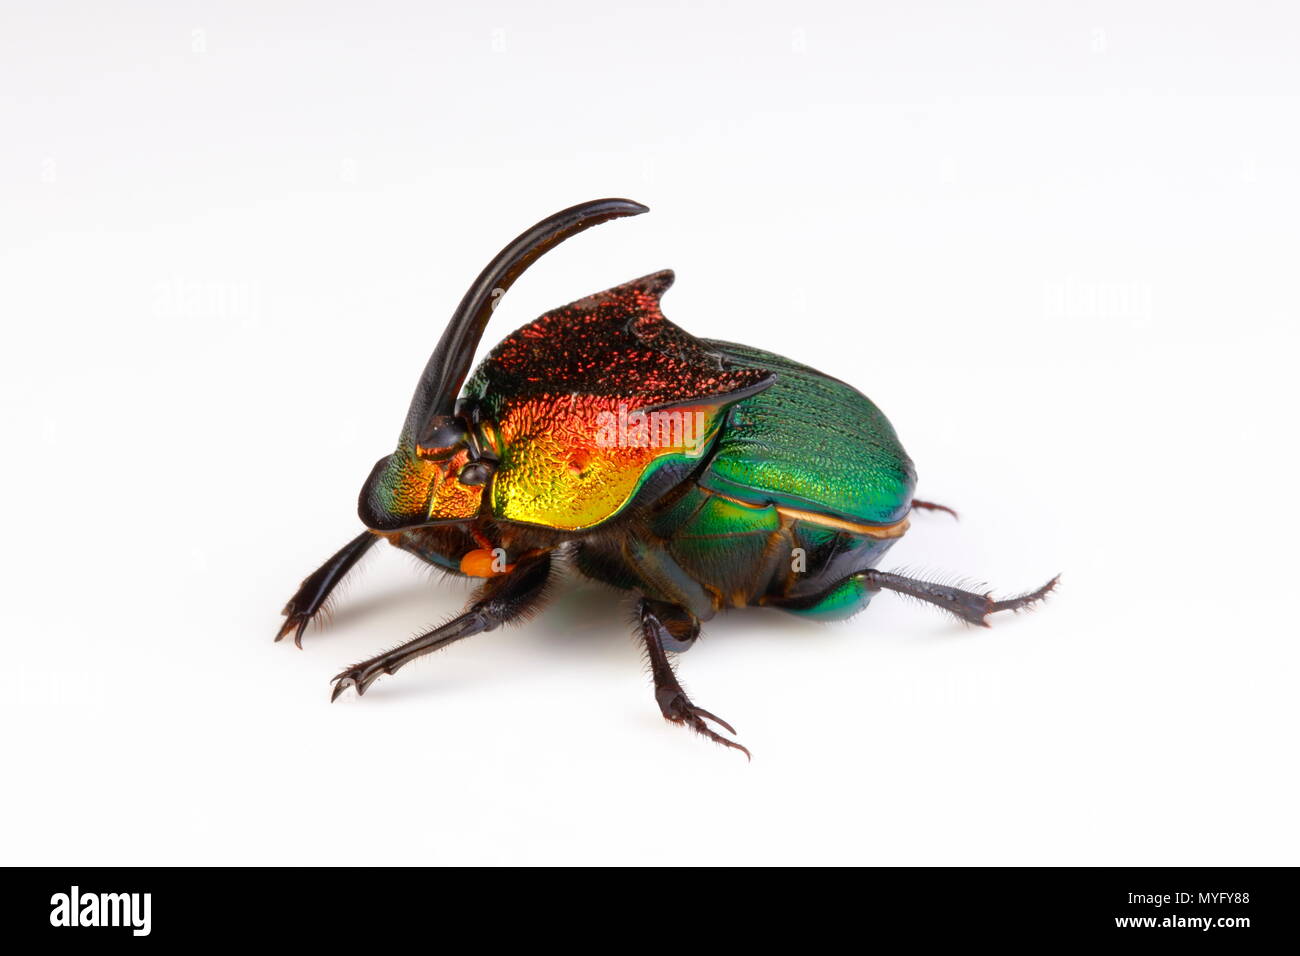 Un arc-en-ciel scarabée mâle, Phanaeus vindex, sur un fond blanc. Banque D'Images